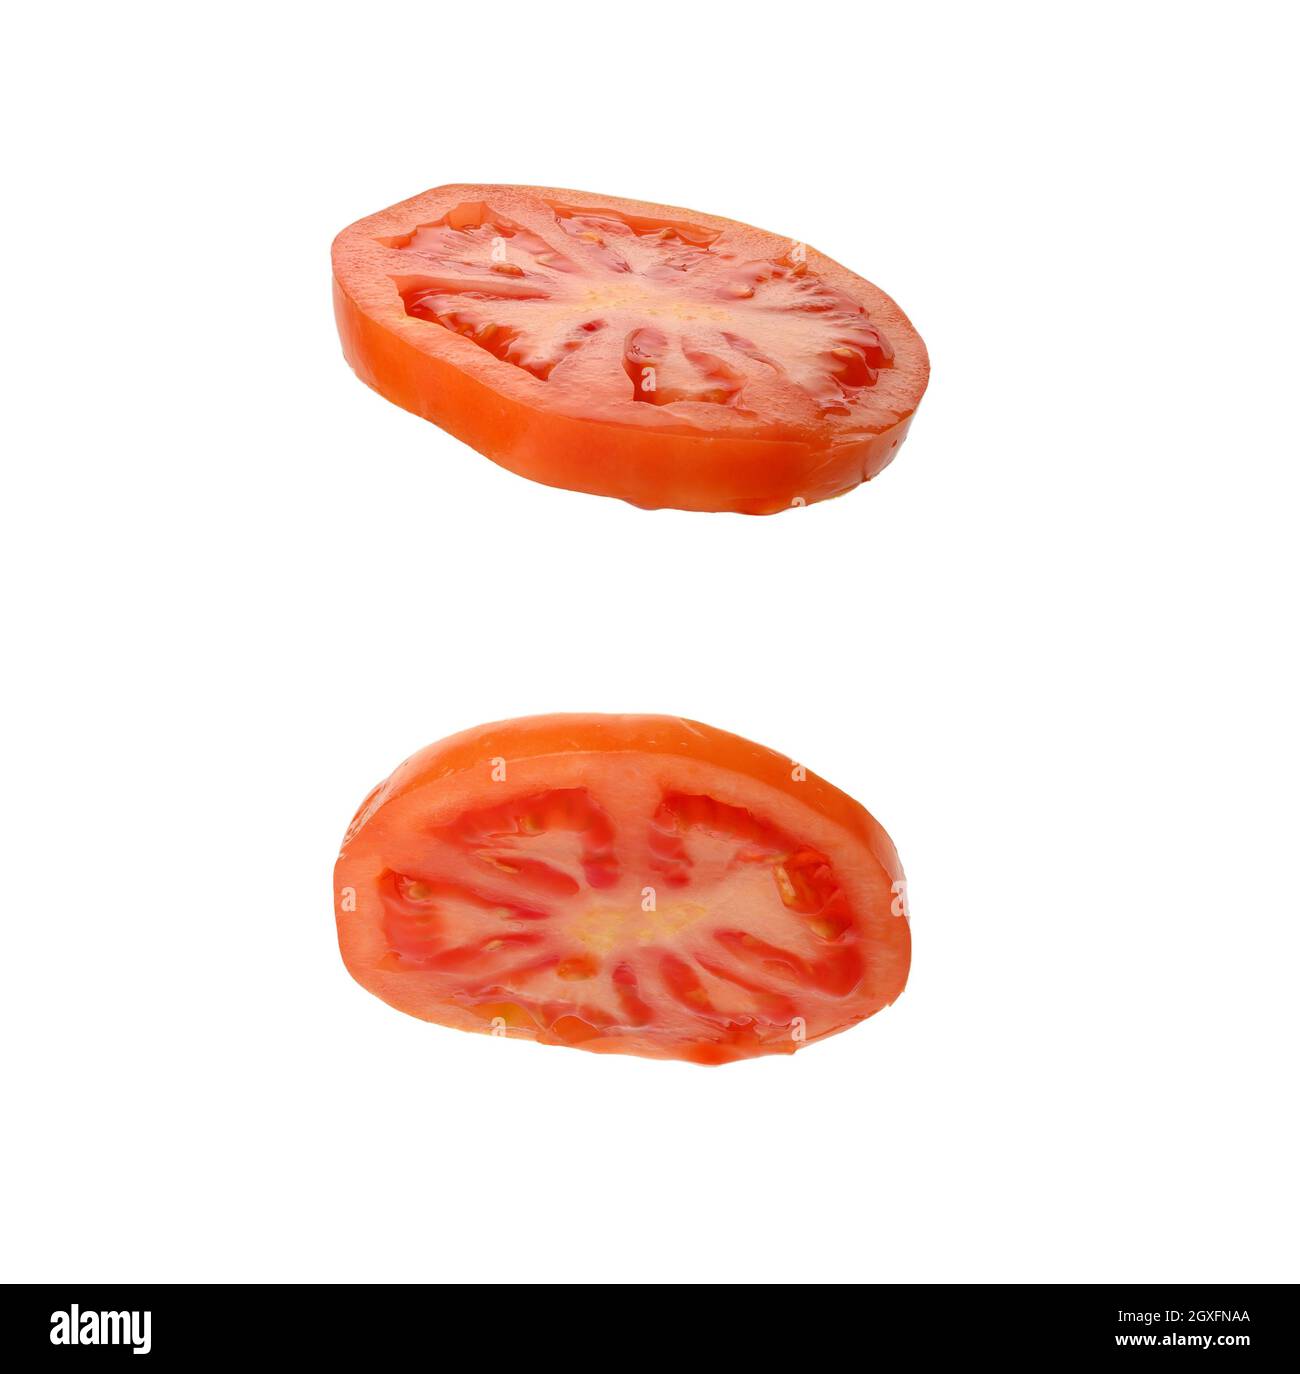 abbondante fetta di pomodoro rosso maturo isolato su sfondo bianco, primo piano Foto Stock